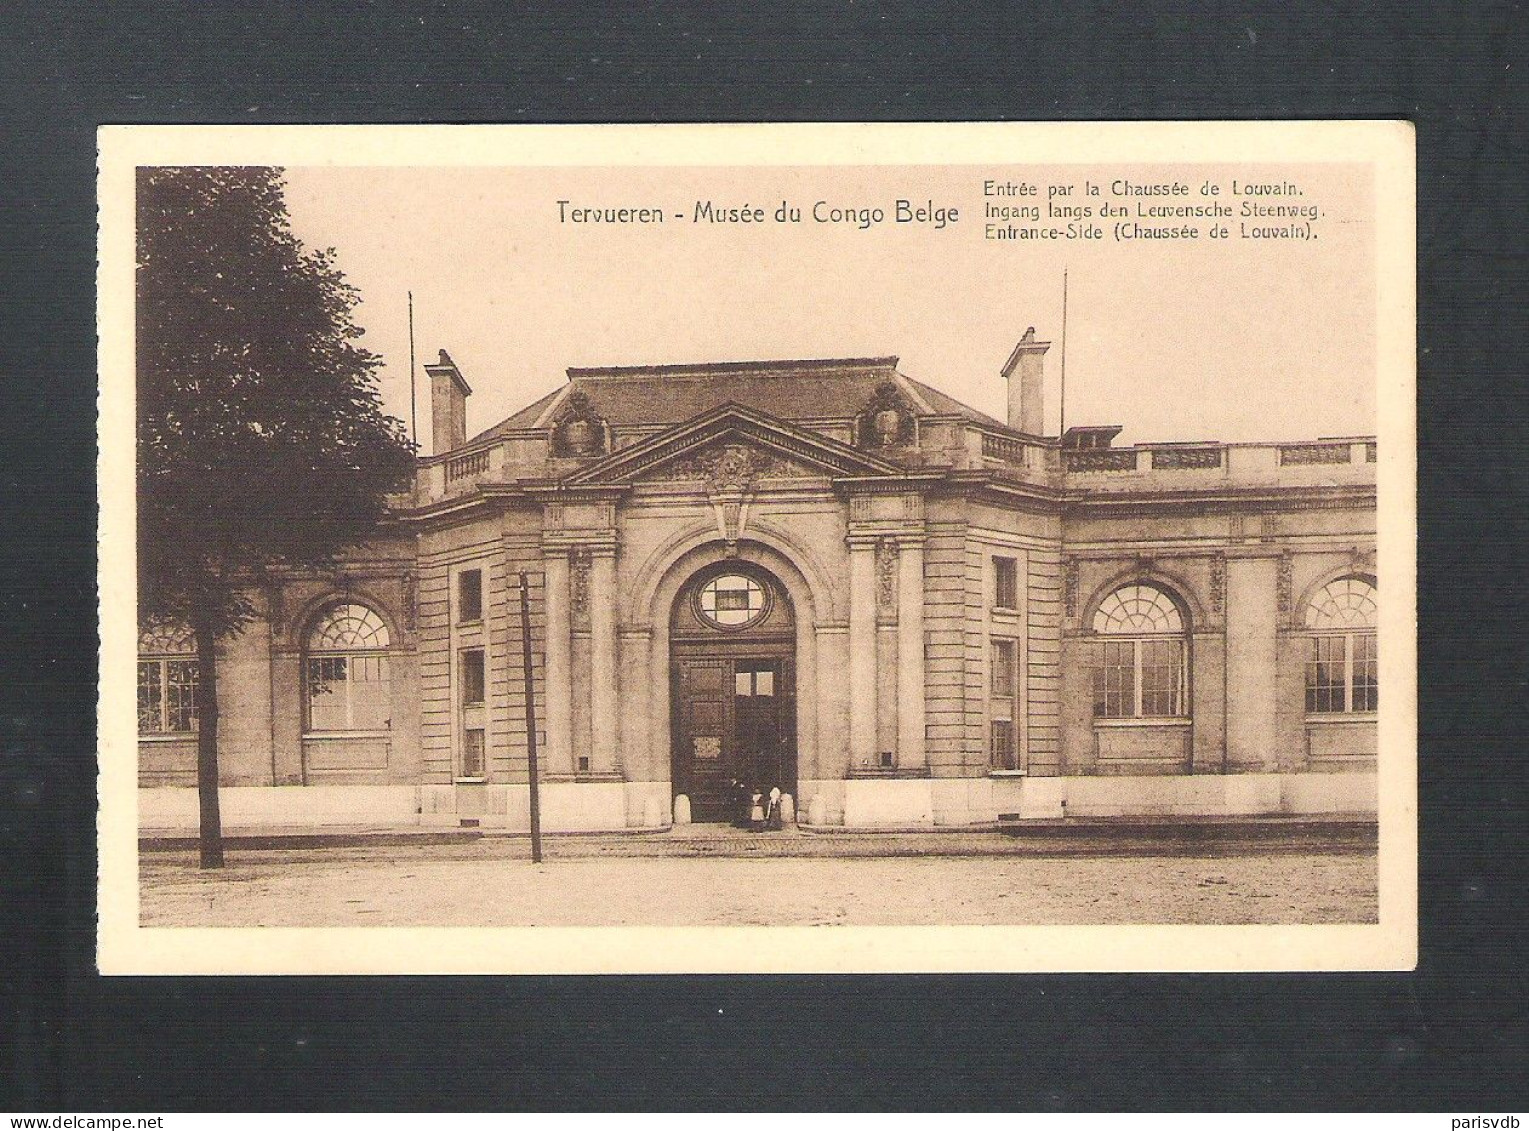 TERVUEREN - MUSEE DU CONGO BELGE - ENTREE PAR LA CHAUSSE DE LOUVAIN - NELS  (14.183) - Tervuren